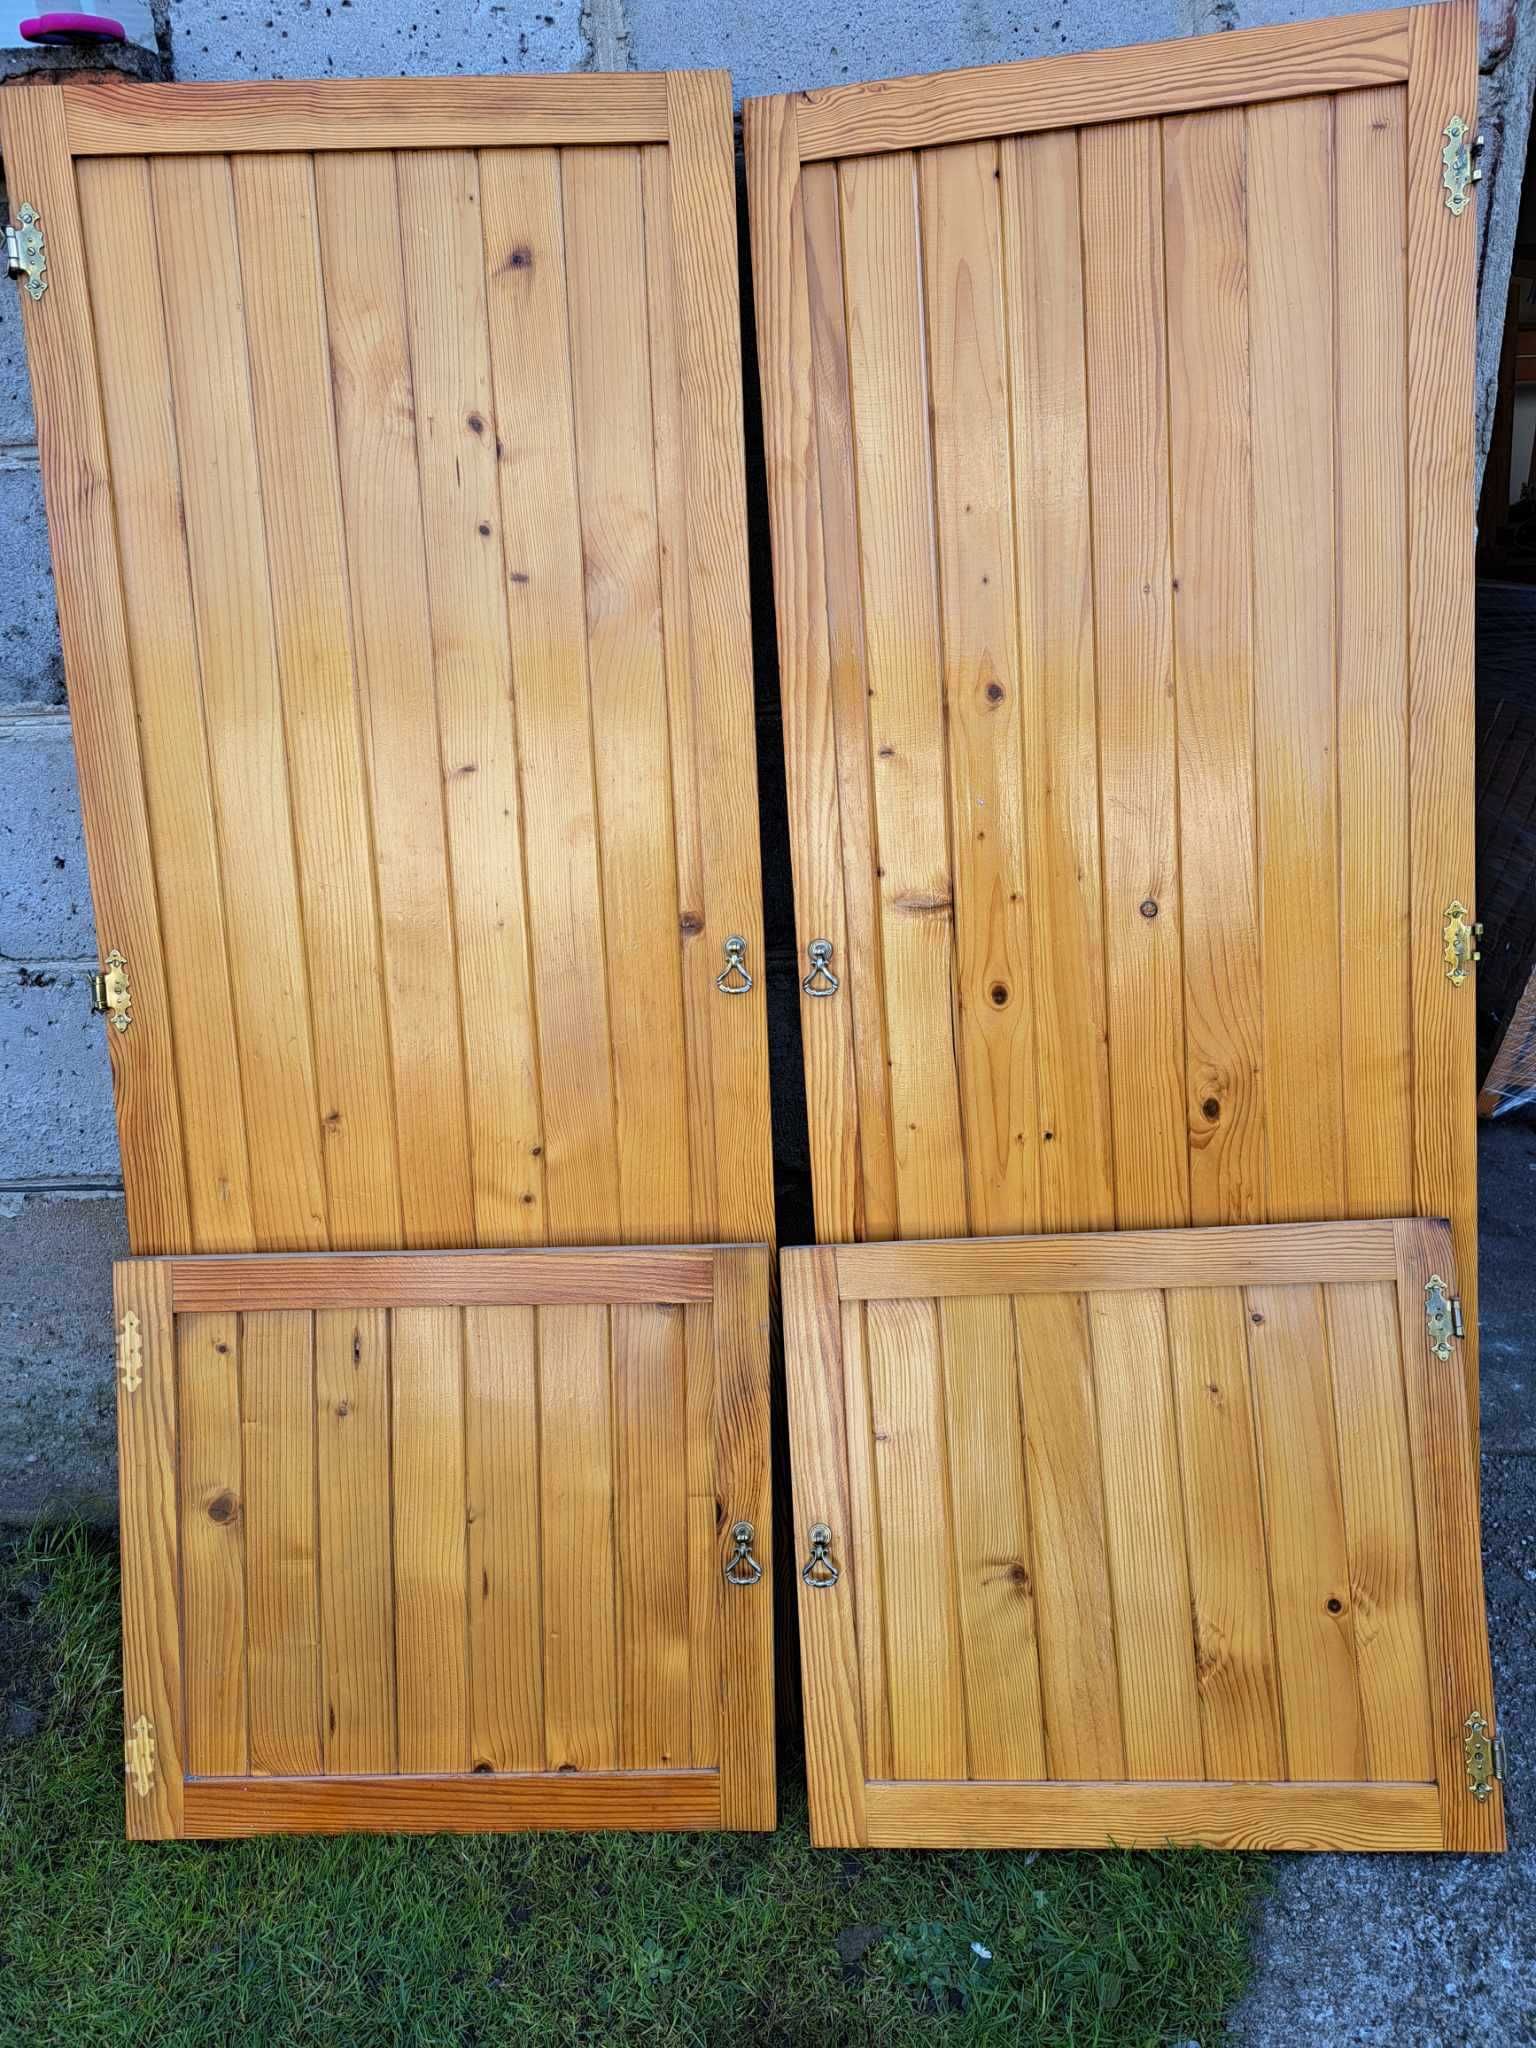 Front szafek drewnianych z boazerii